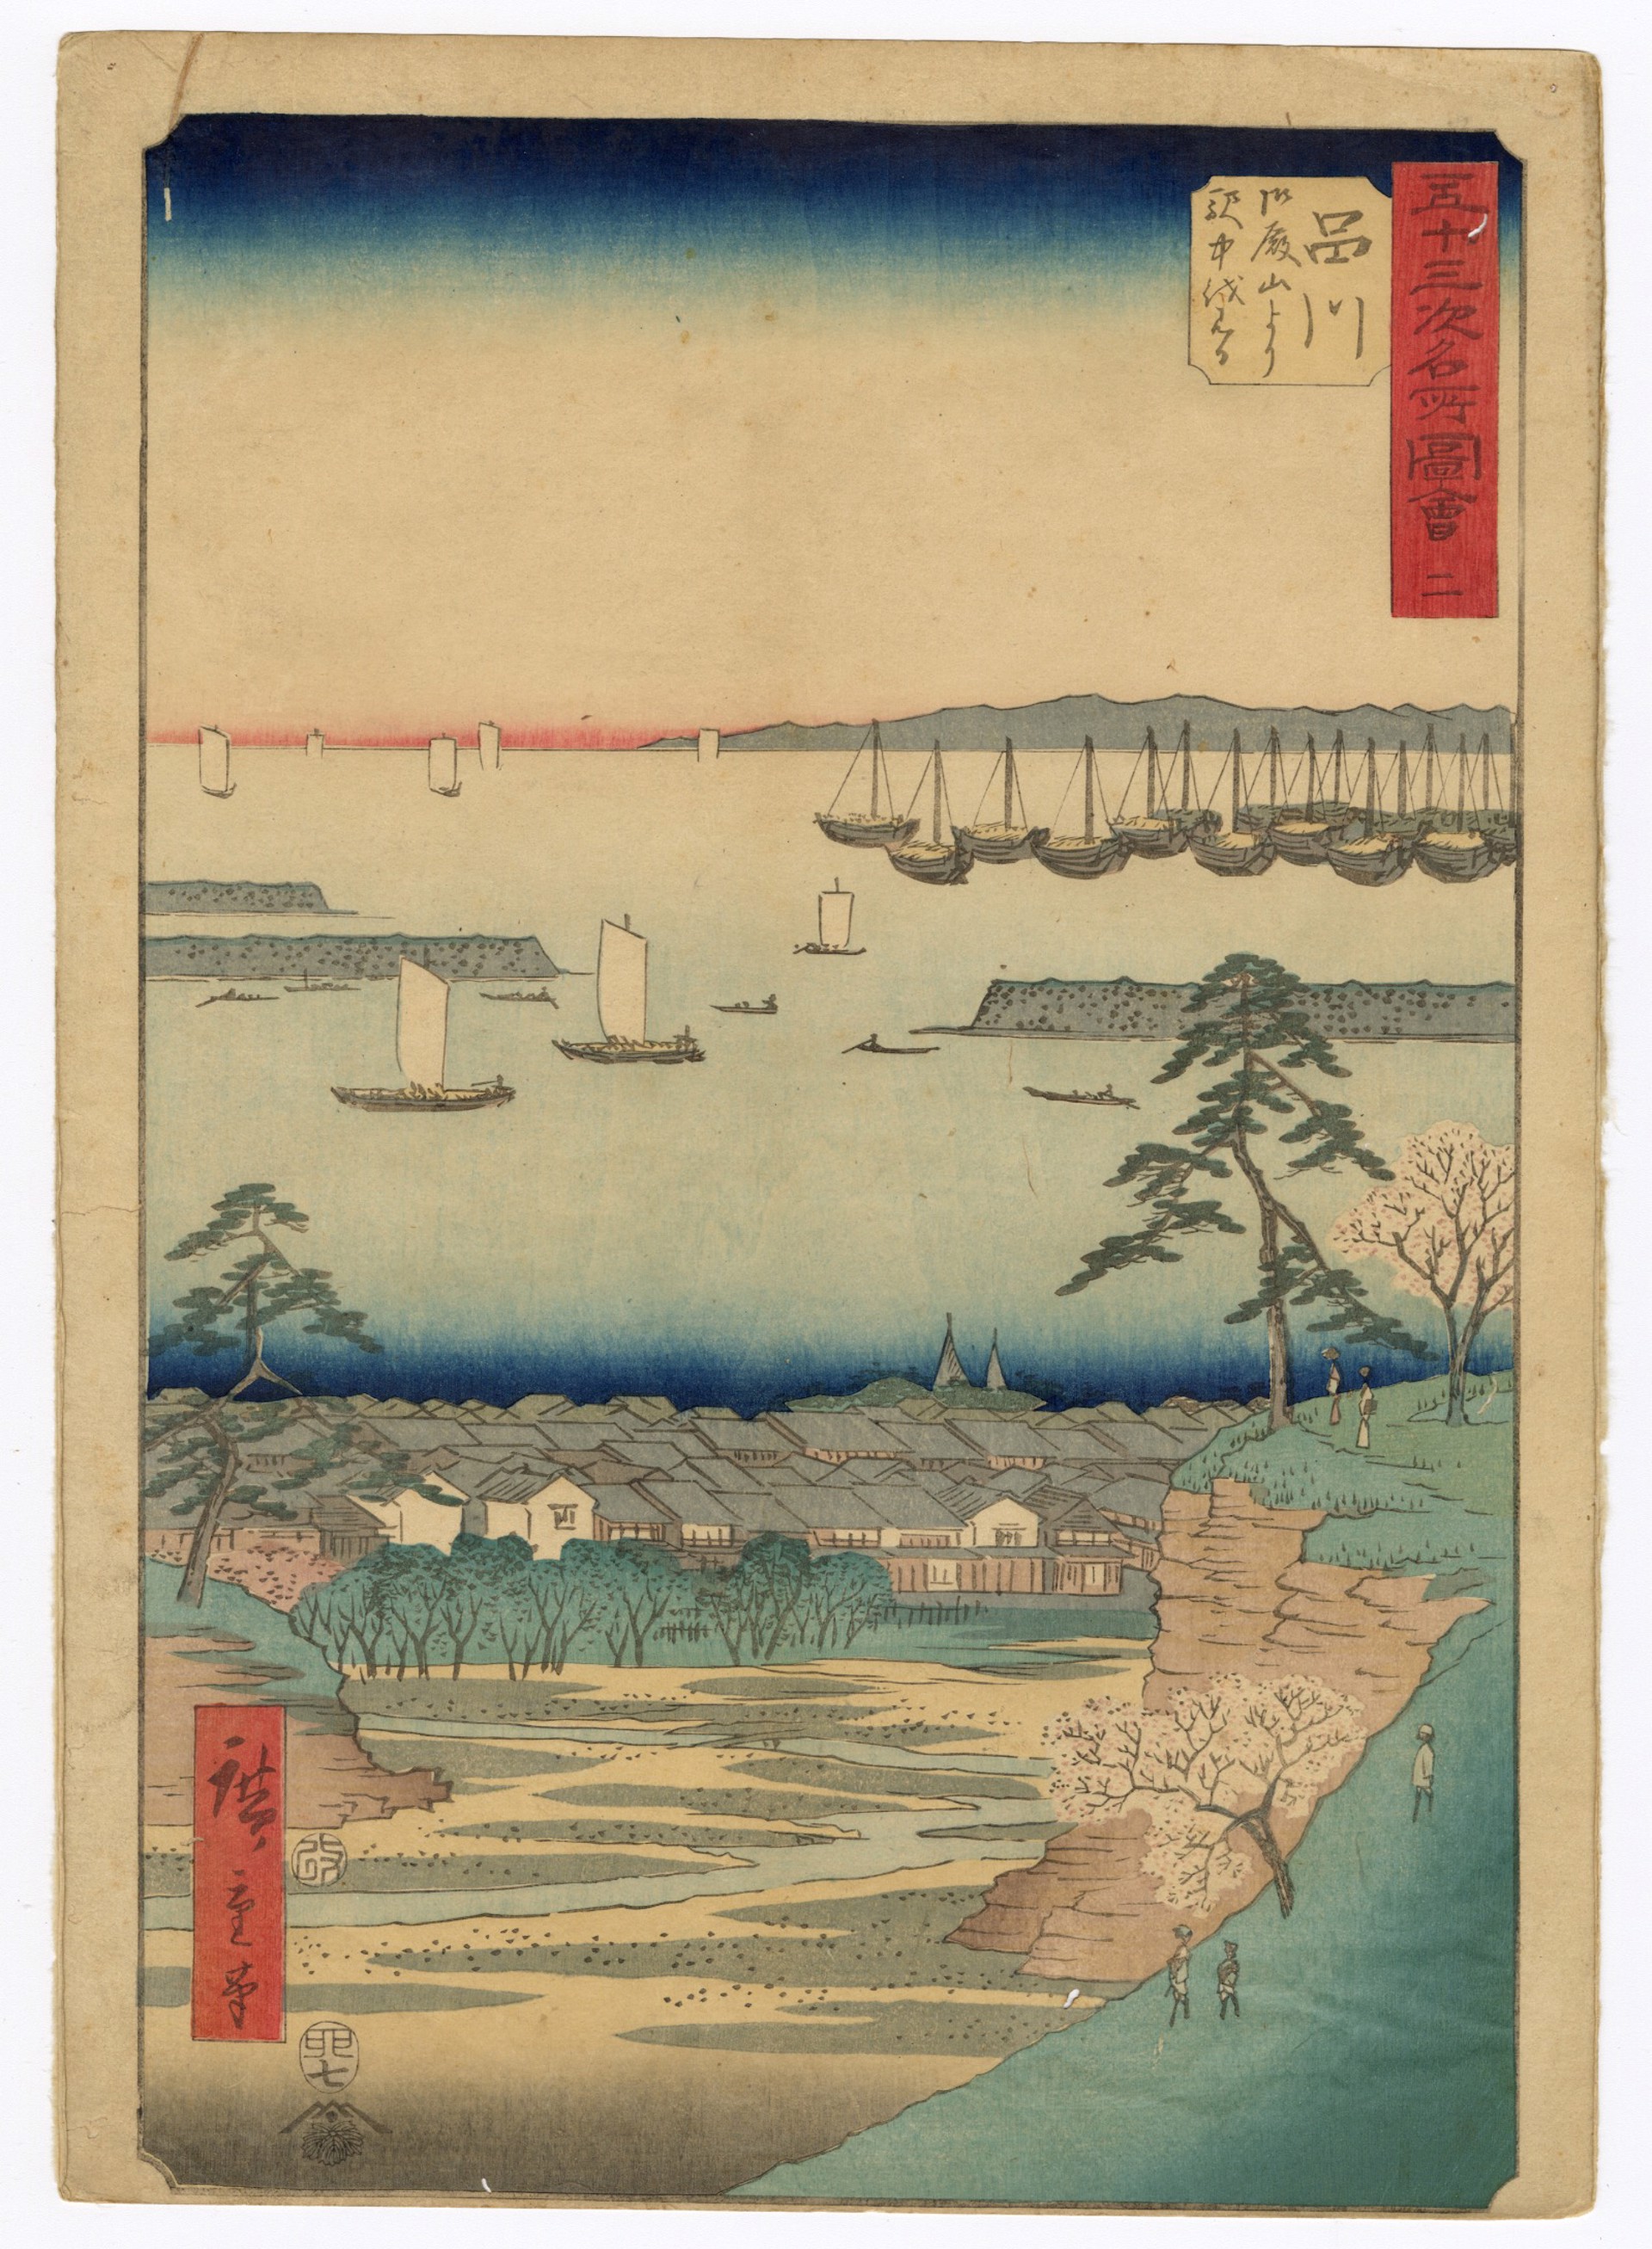 #2 Shinagawa - A View of the Station from Goten-yama by Hiroshige